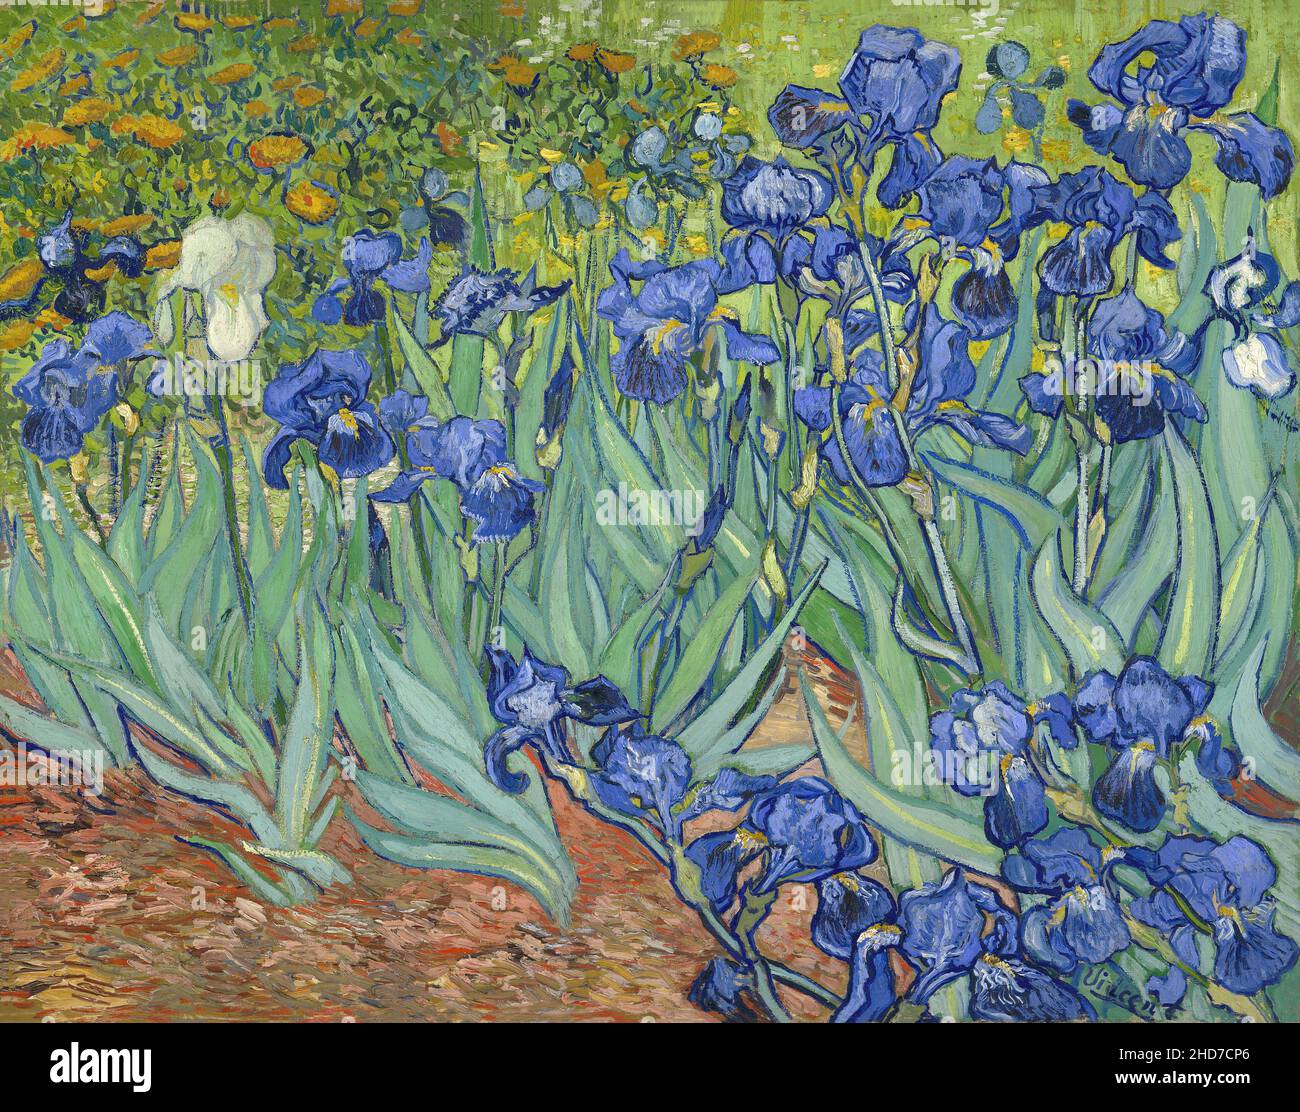 Vincent van Gogh (Niederländisch, 1853 - 1890), Irises, 1889, Post-Impressionismus. Öl auf Leinwand, das J. Paul Getty Museum, Malibu, Los Angeles, Kalifornien, Stockfoto